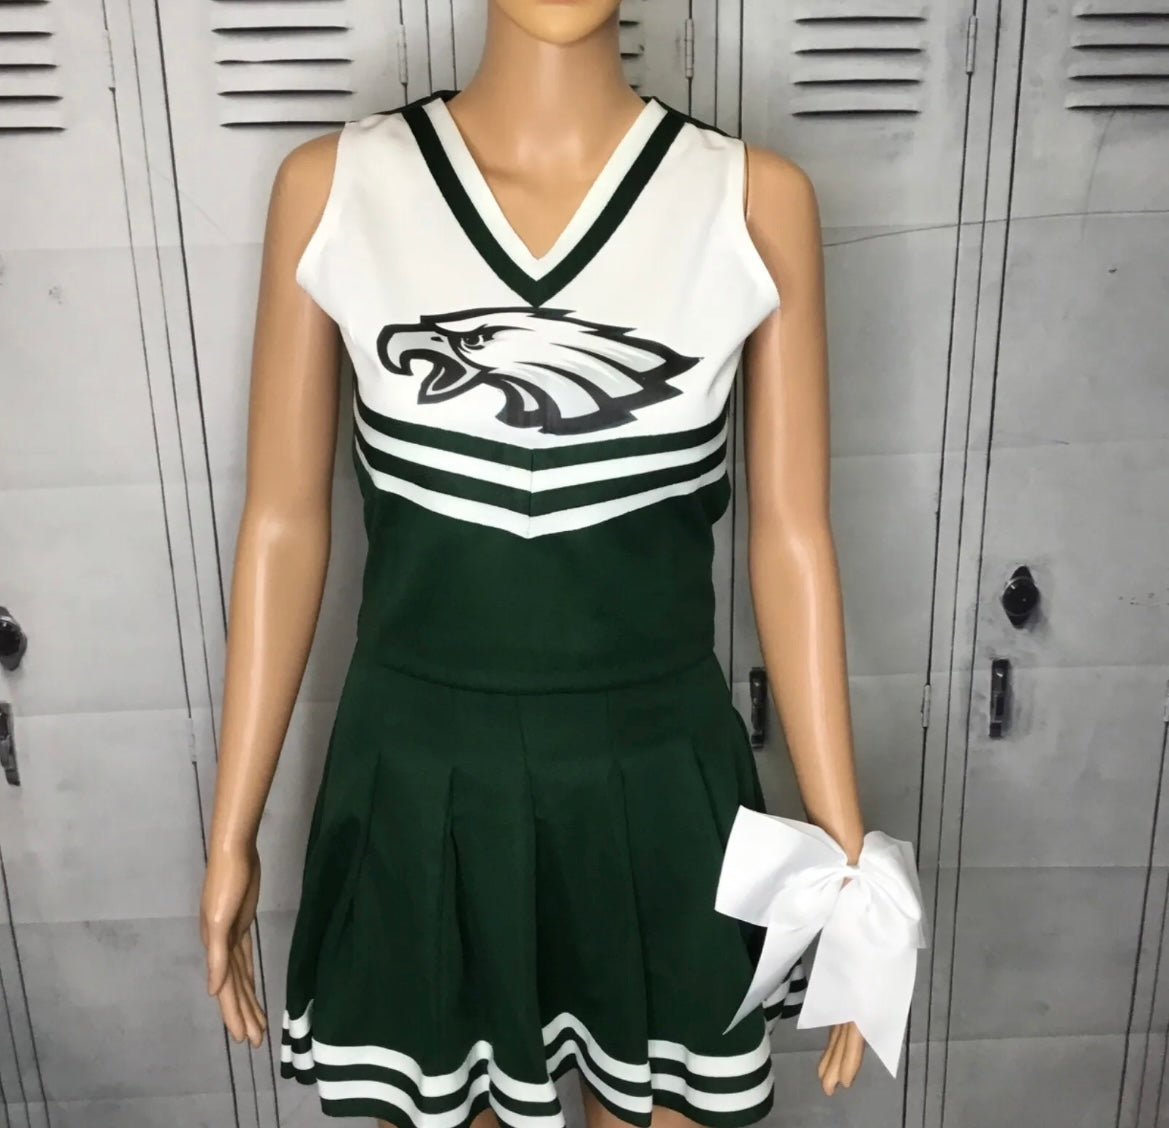 Eagles cheer uniform